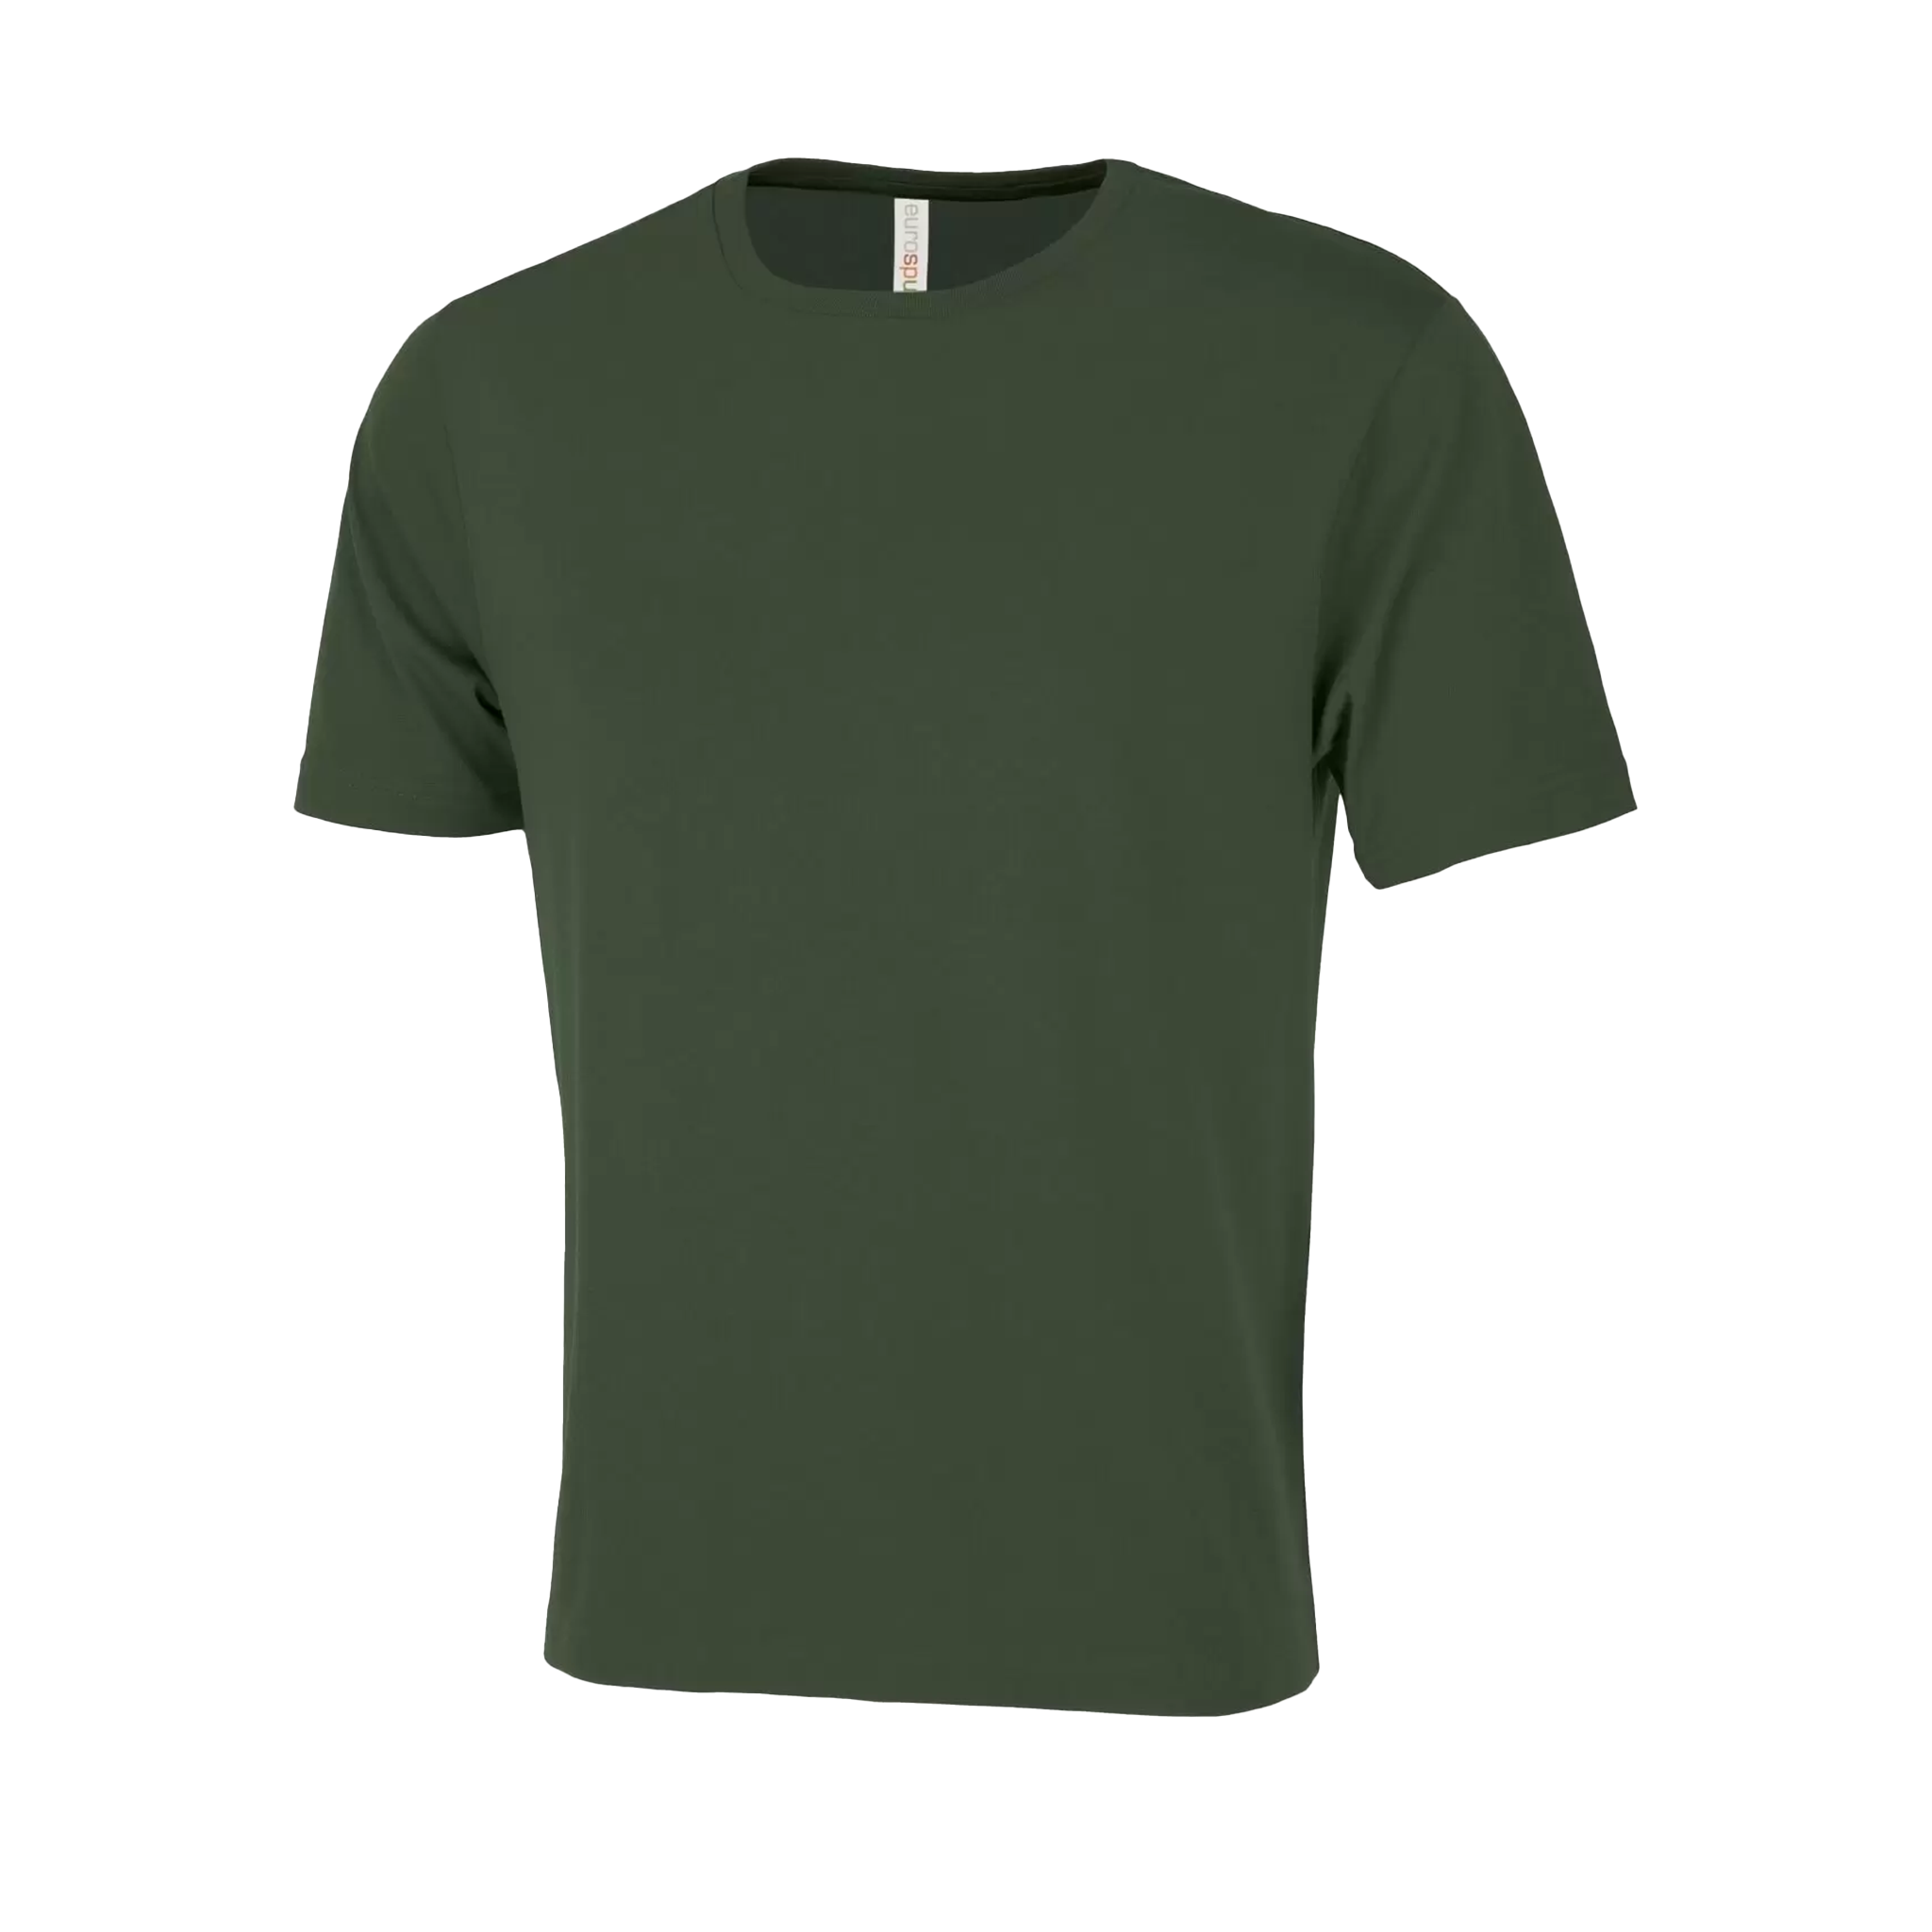 ATC Eurospun Ring Spun T-Shirt - Men's Sizing XS-4XL - Forrest Green